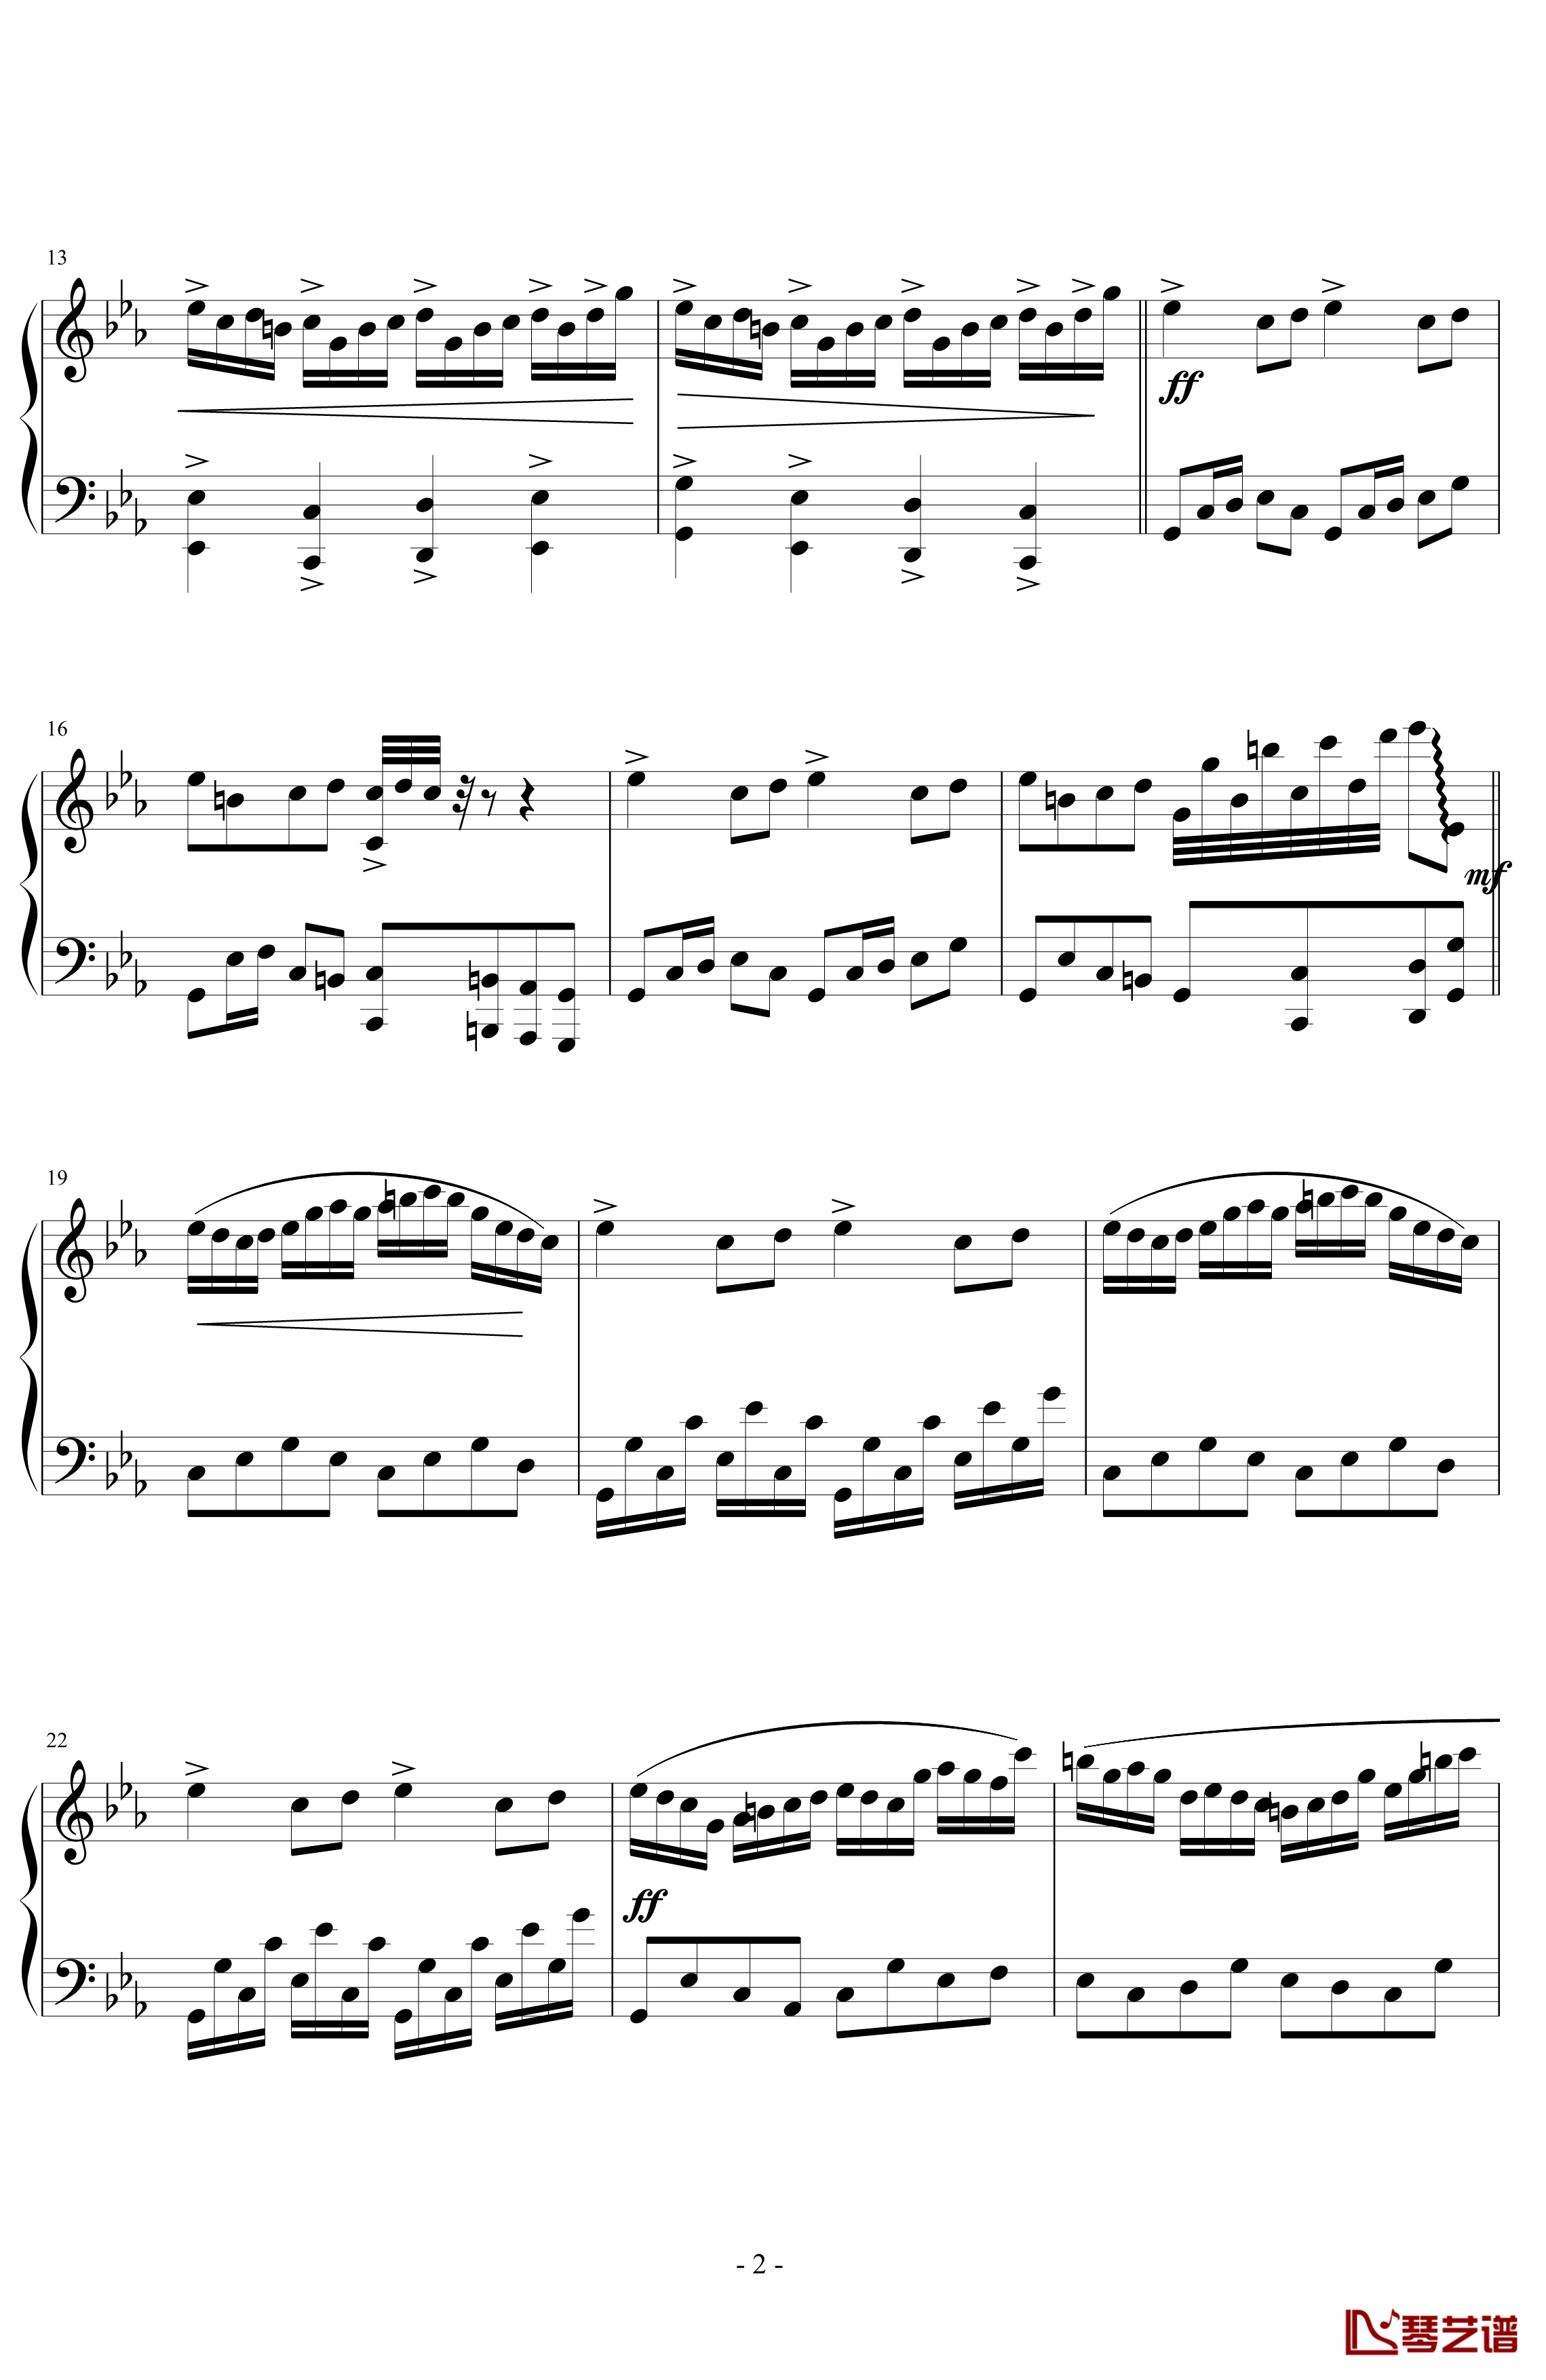 文武贝vs贝多芬钢琴谱-瞎闹版-蕾诺丝2